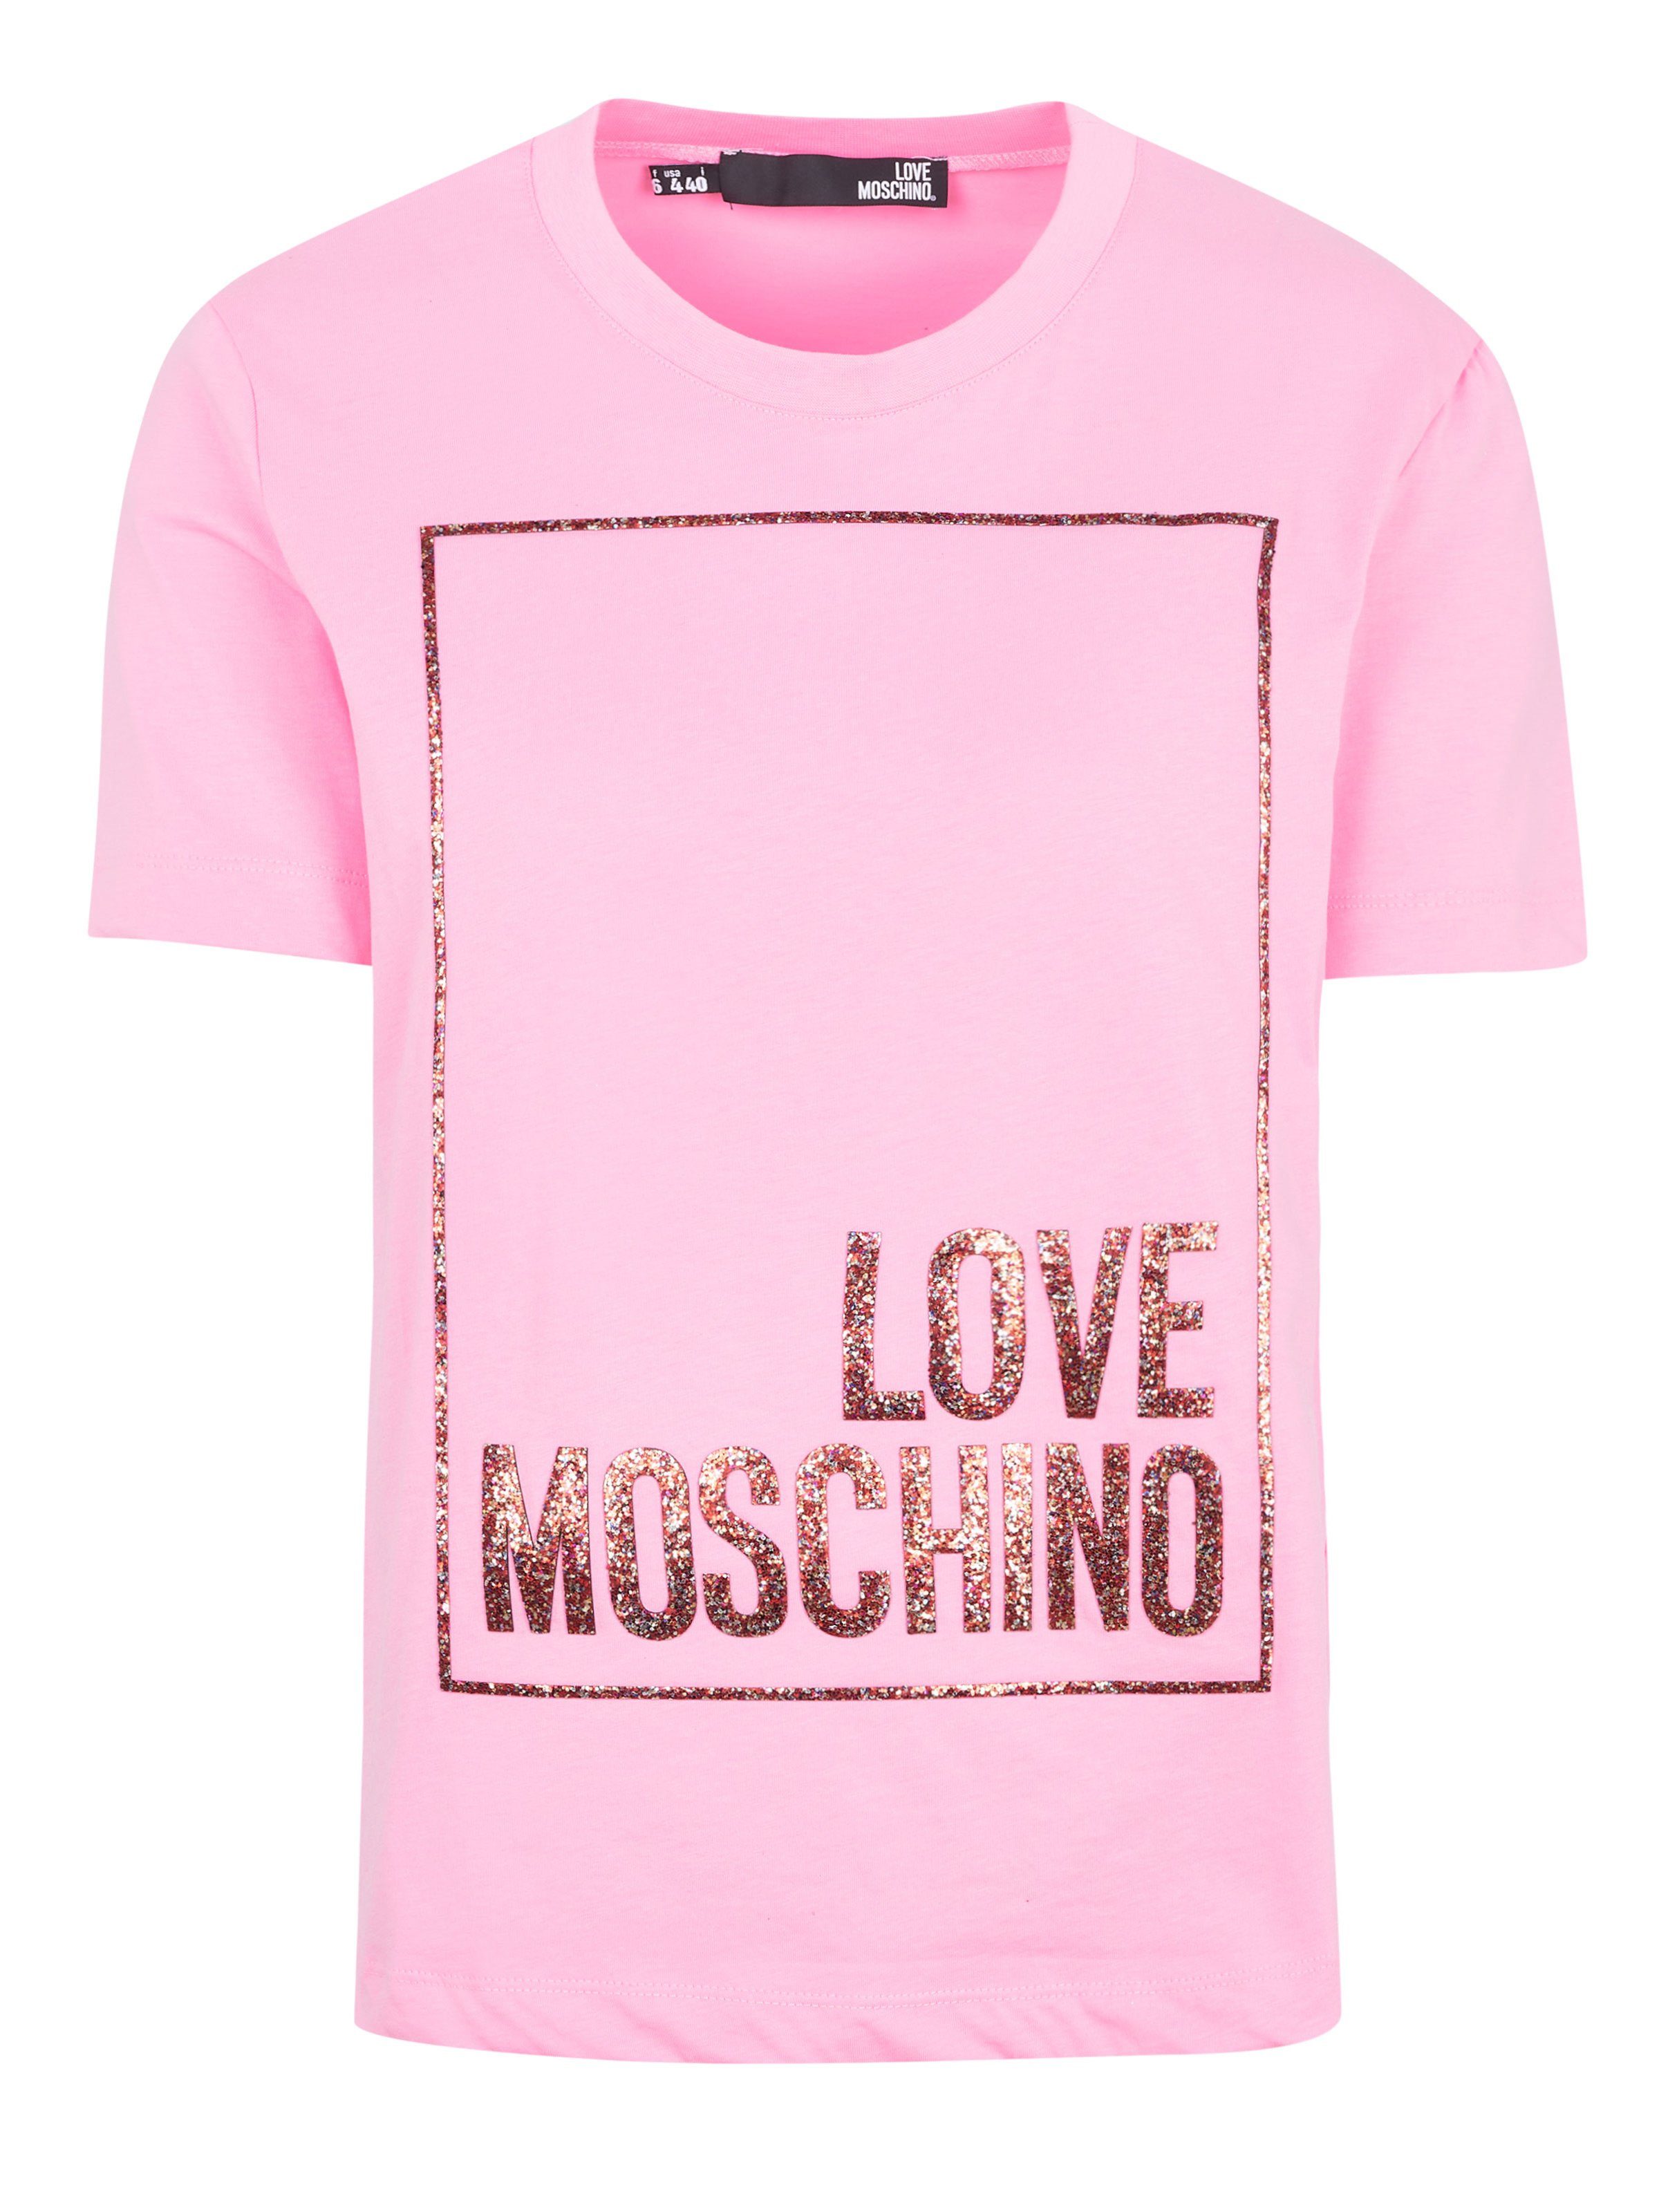 LOVE MOSCHINO T-Shirt Love Moschino Top